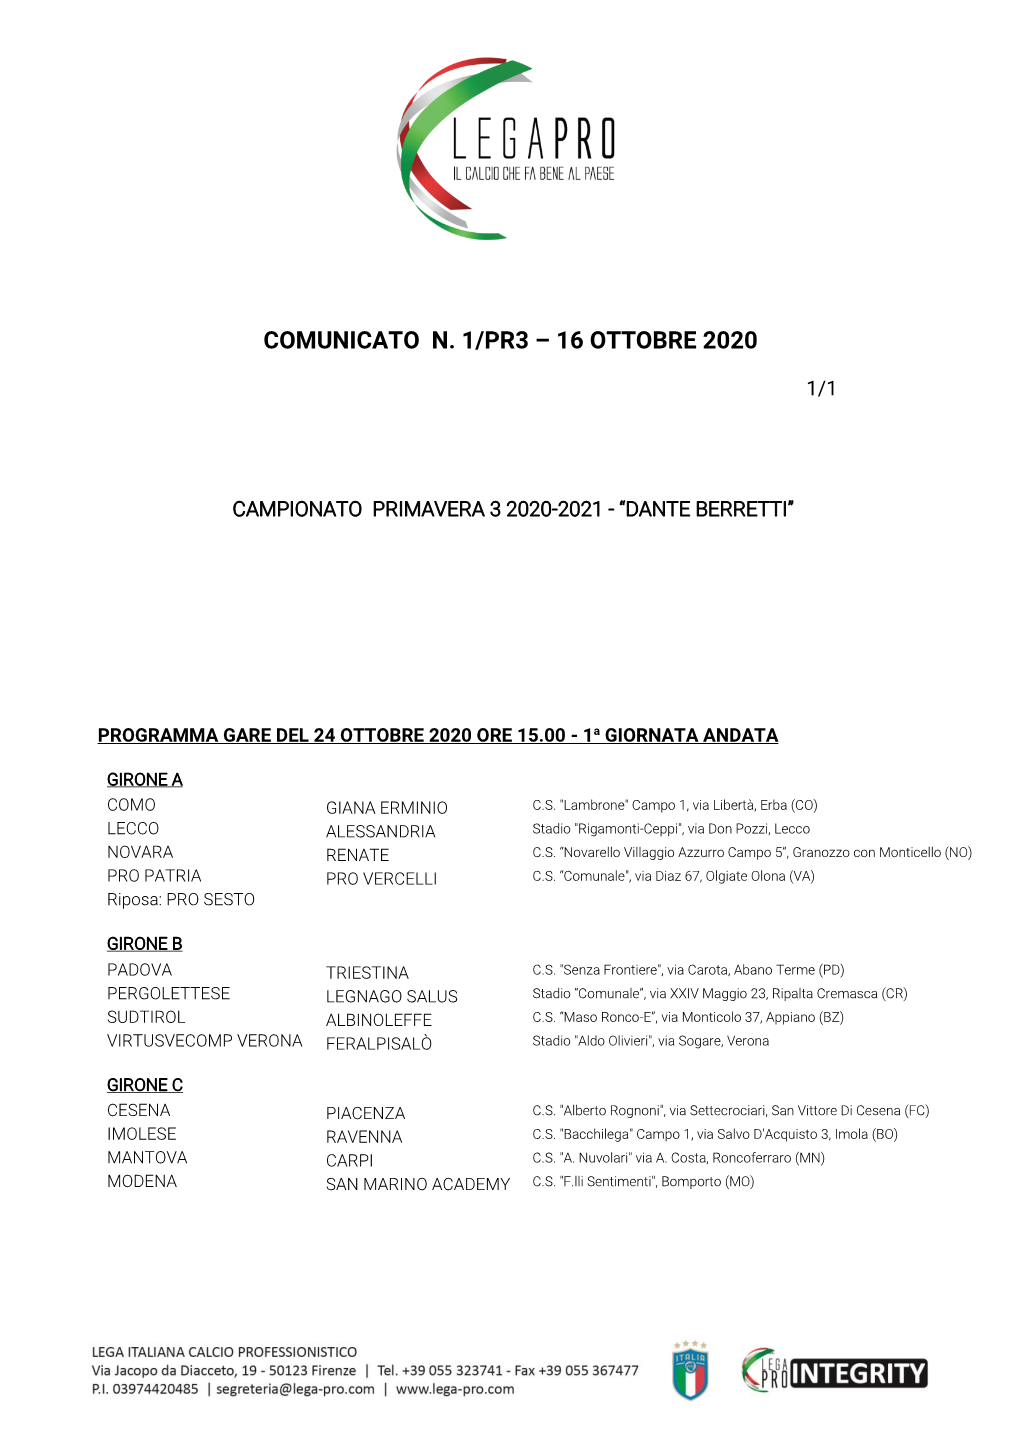 Campionato Primavera 3 2020-21 “Dante Berretti